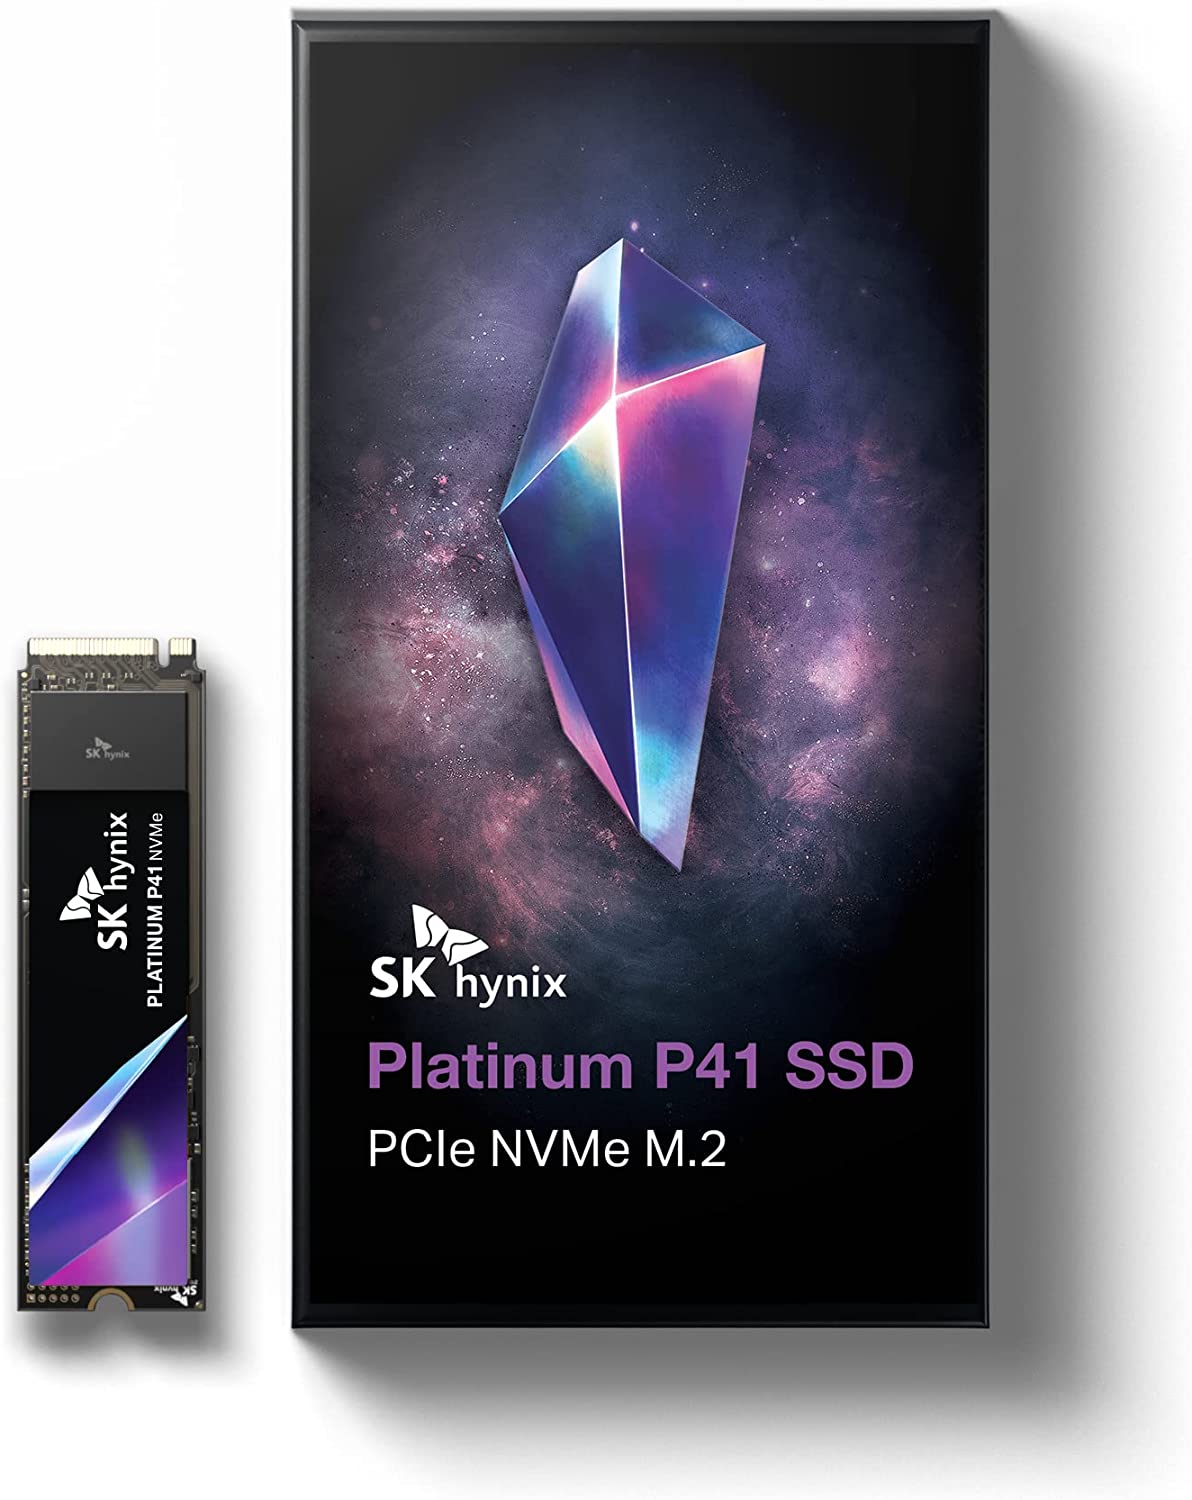 SK hynix Platinum P41